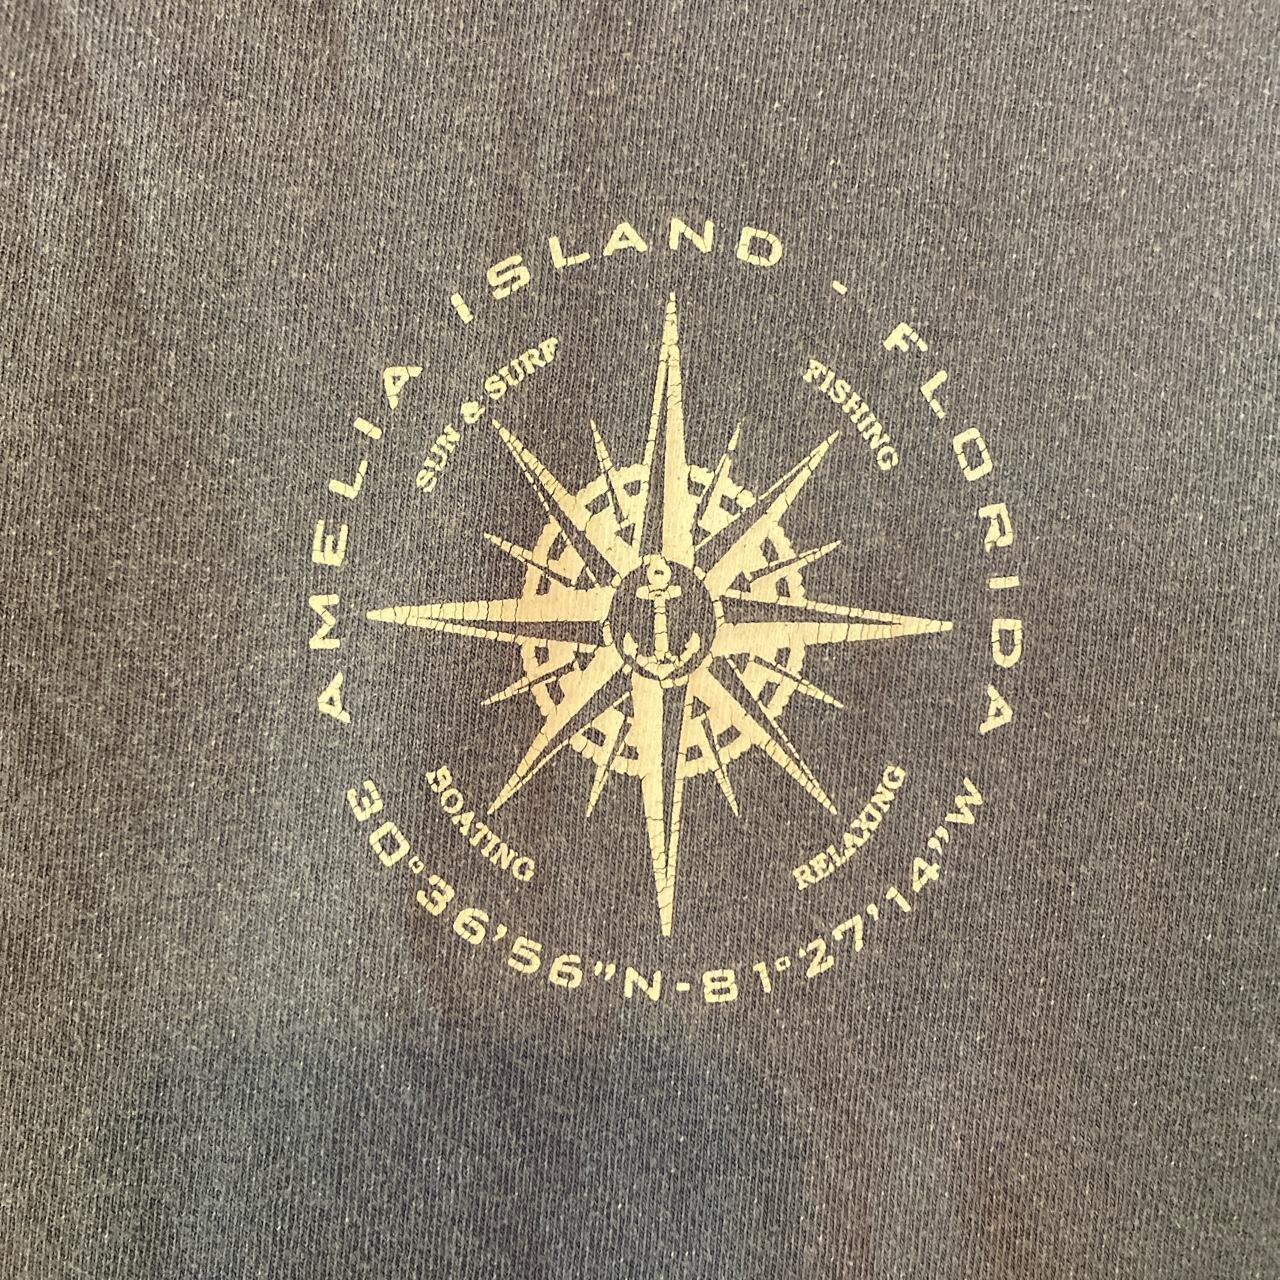 Product Image 4 - Rad Amelia Island, Florida t-shirt!